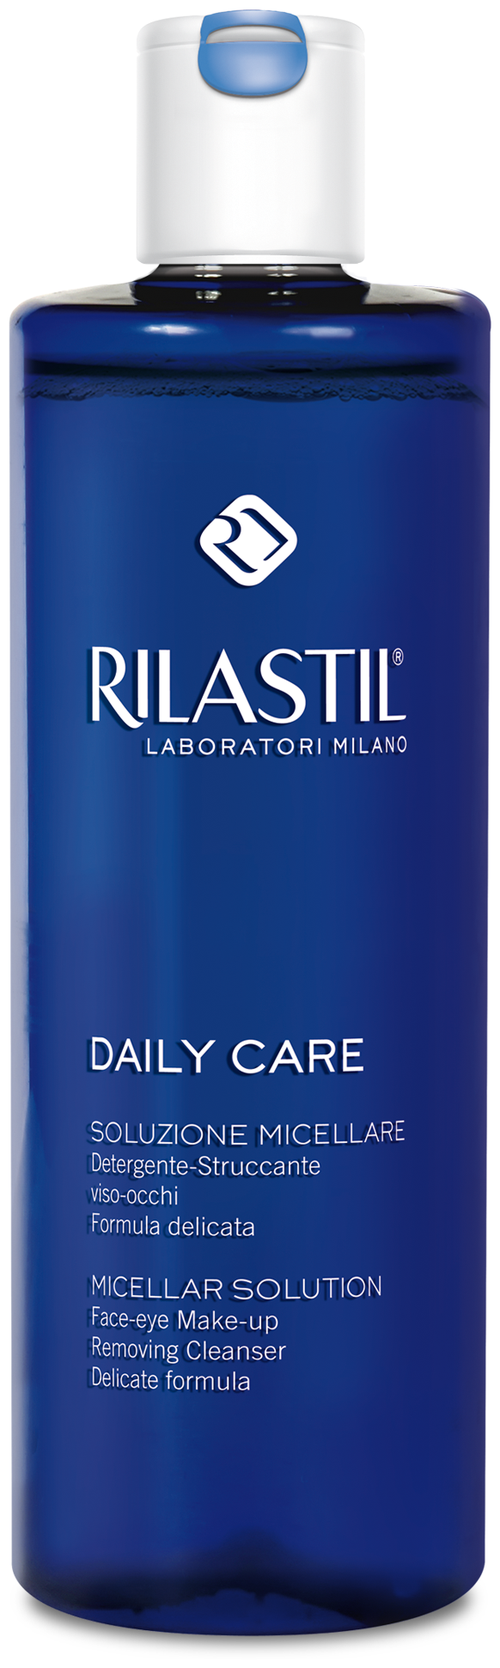 Rilastil мицеллярная вода для снятия макияжа с лица и глаз Daily Care, 250 мл